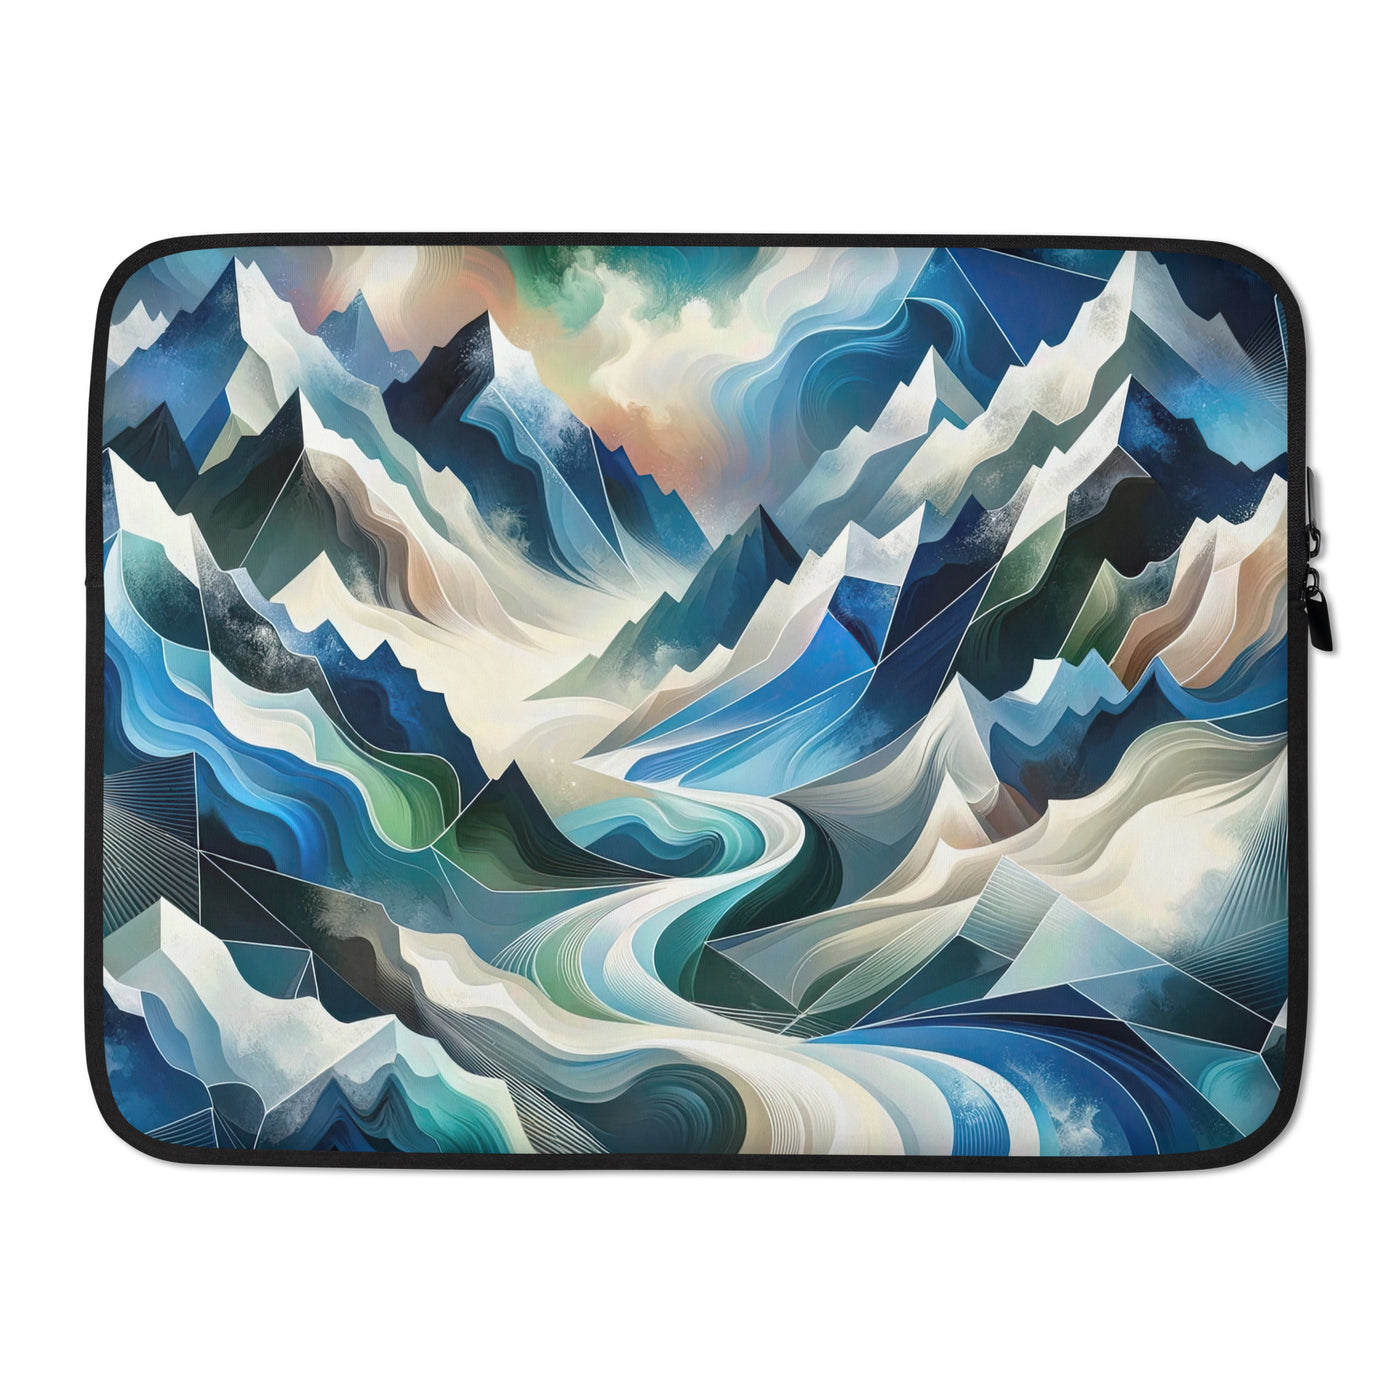 Abstrakte Kunst der Alpen, die geometrische Formen verbindet, um Berggipfel, Täler und Flüsse im Schnee darzustellen. . - Laptophülle berge xxx yyy zzz 15″